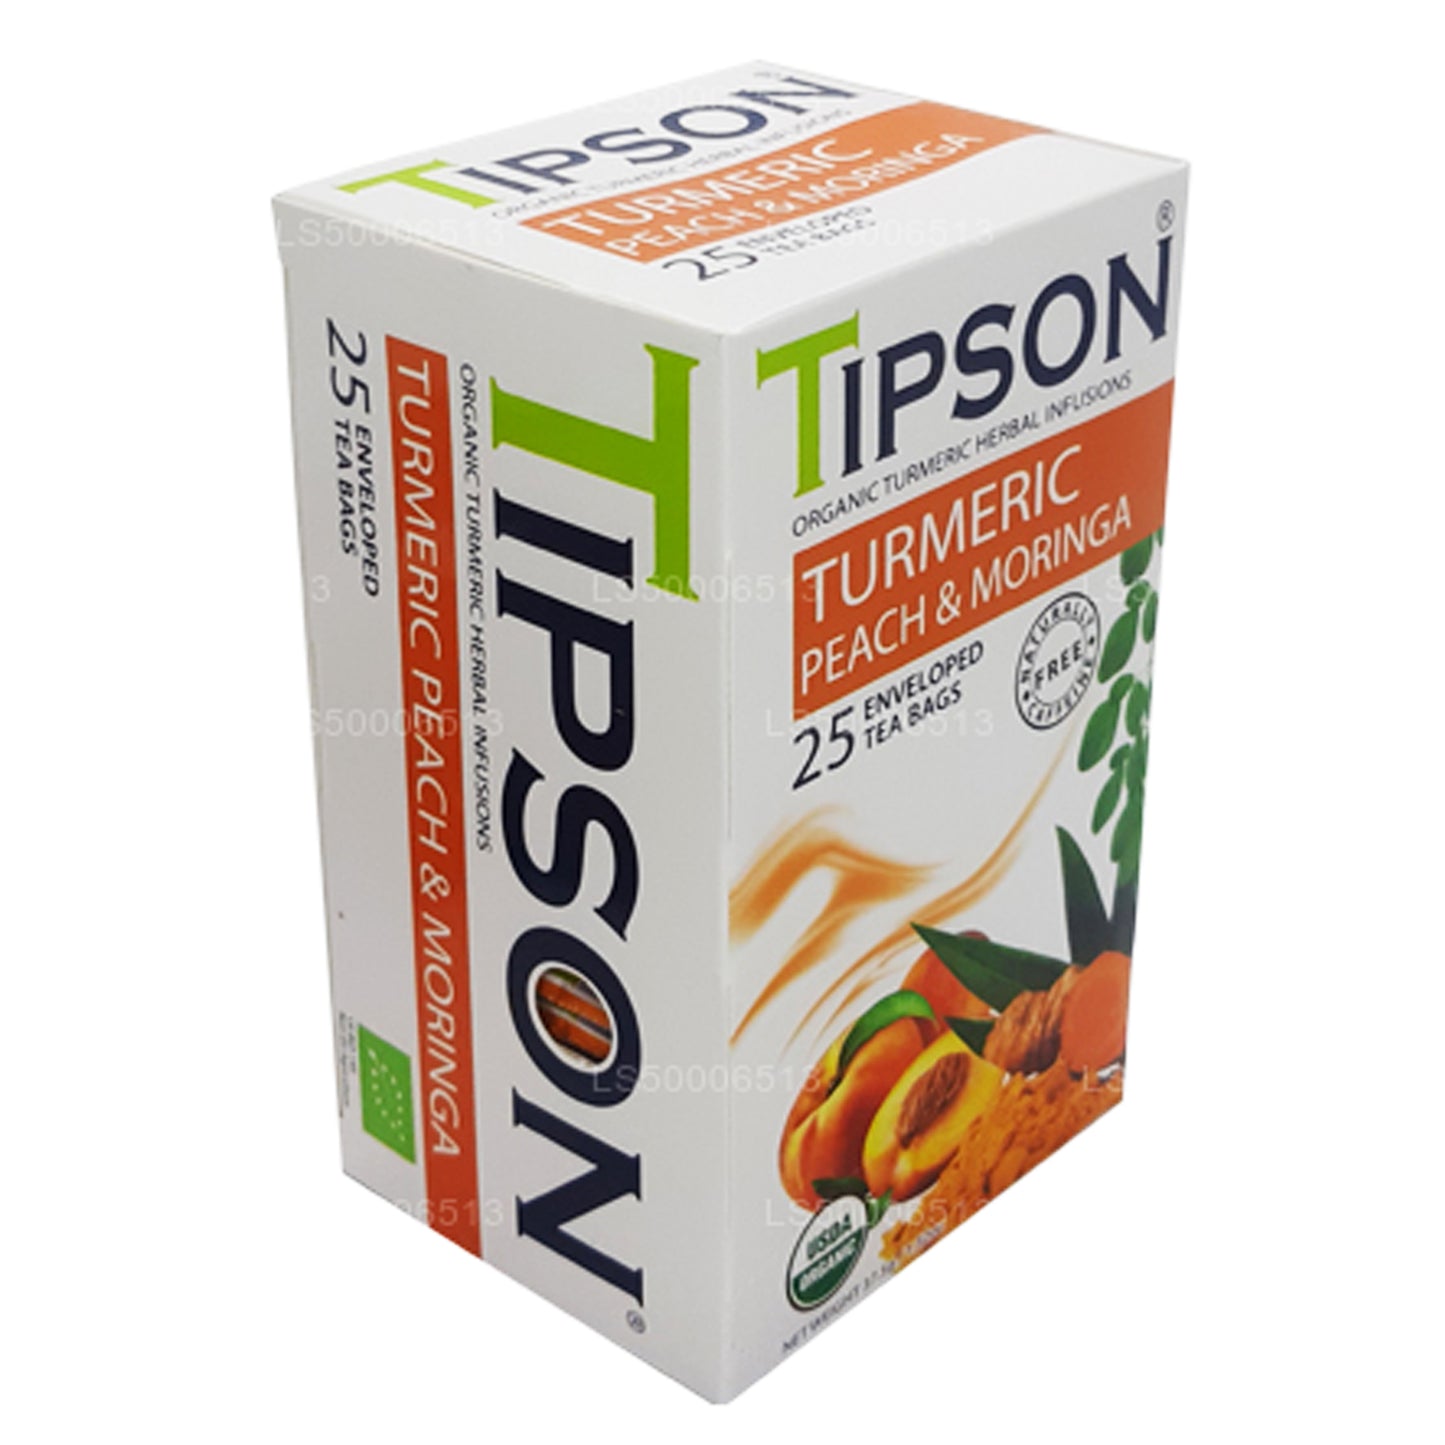 Tipson Tea オーガニックターメリックピーチアンドモリンガ (37.5g)